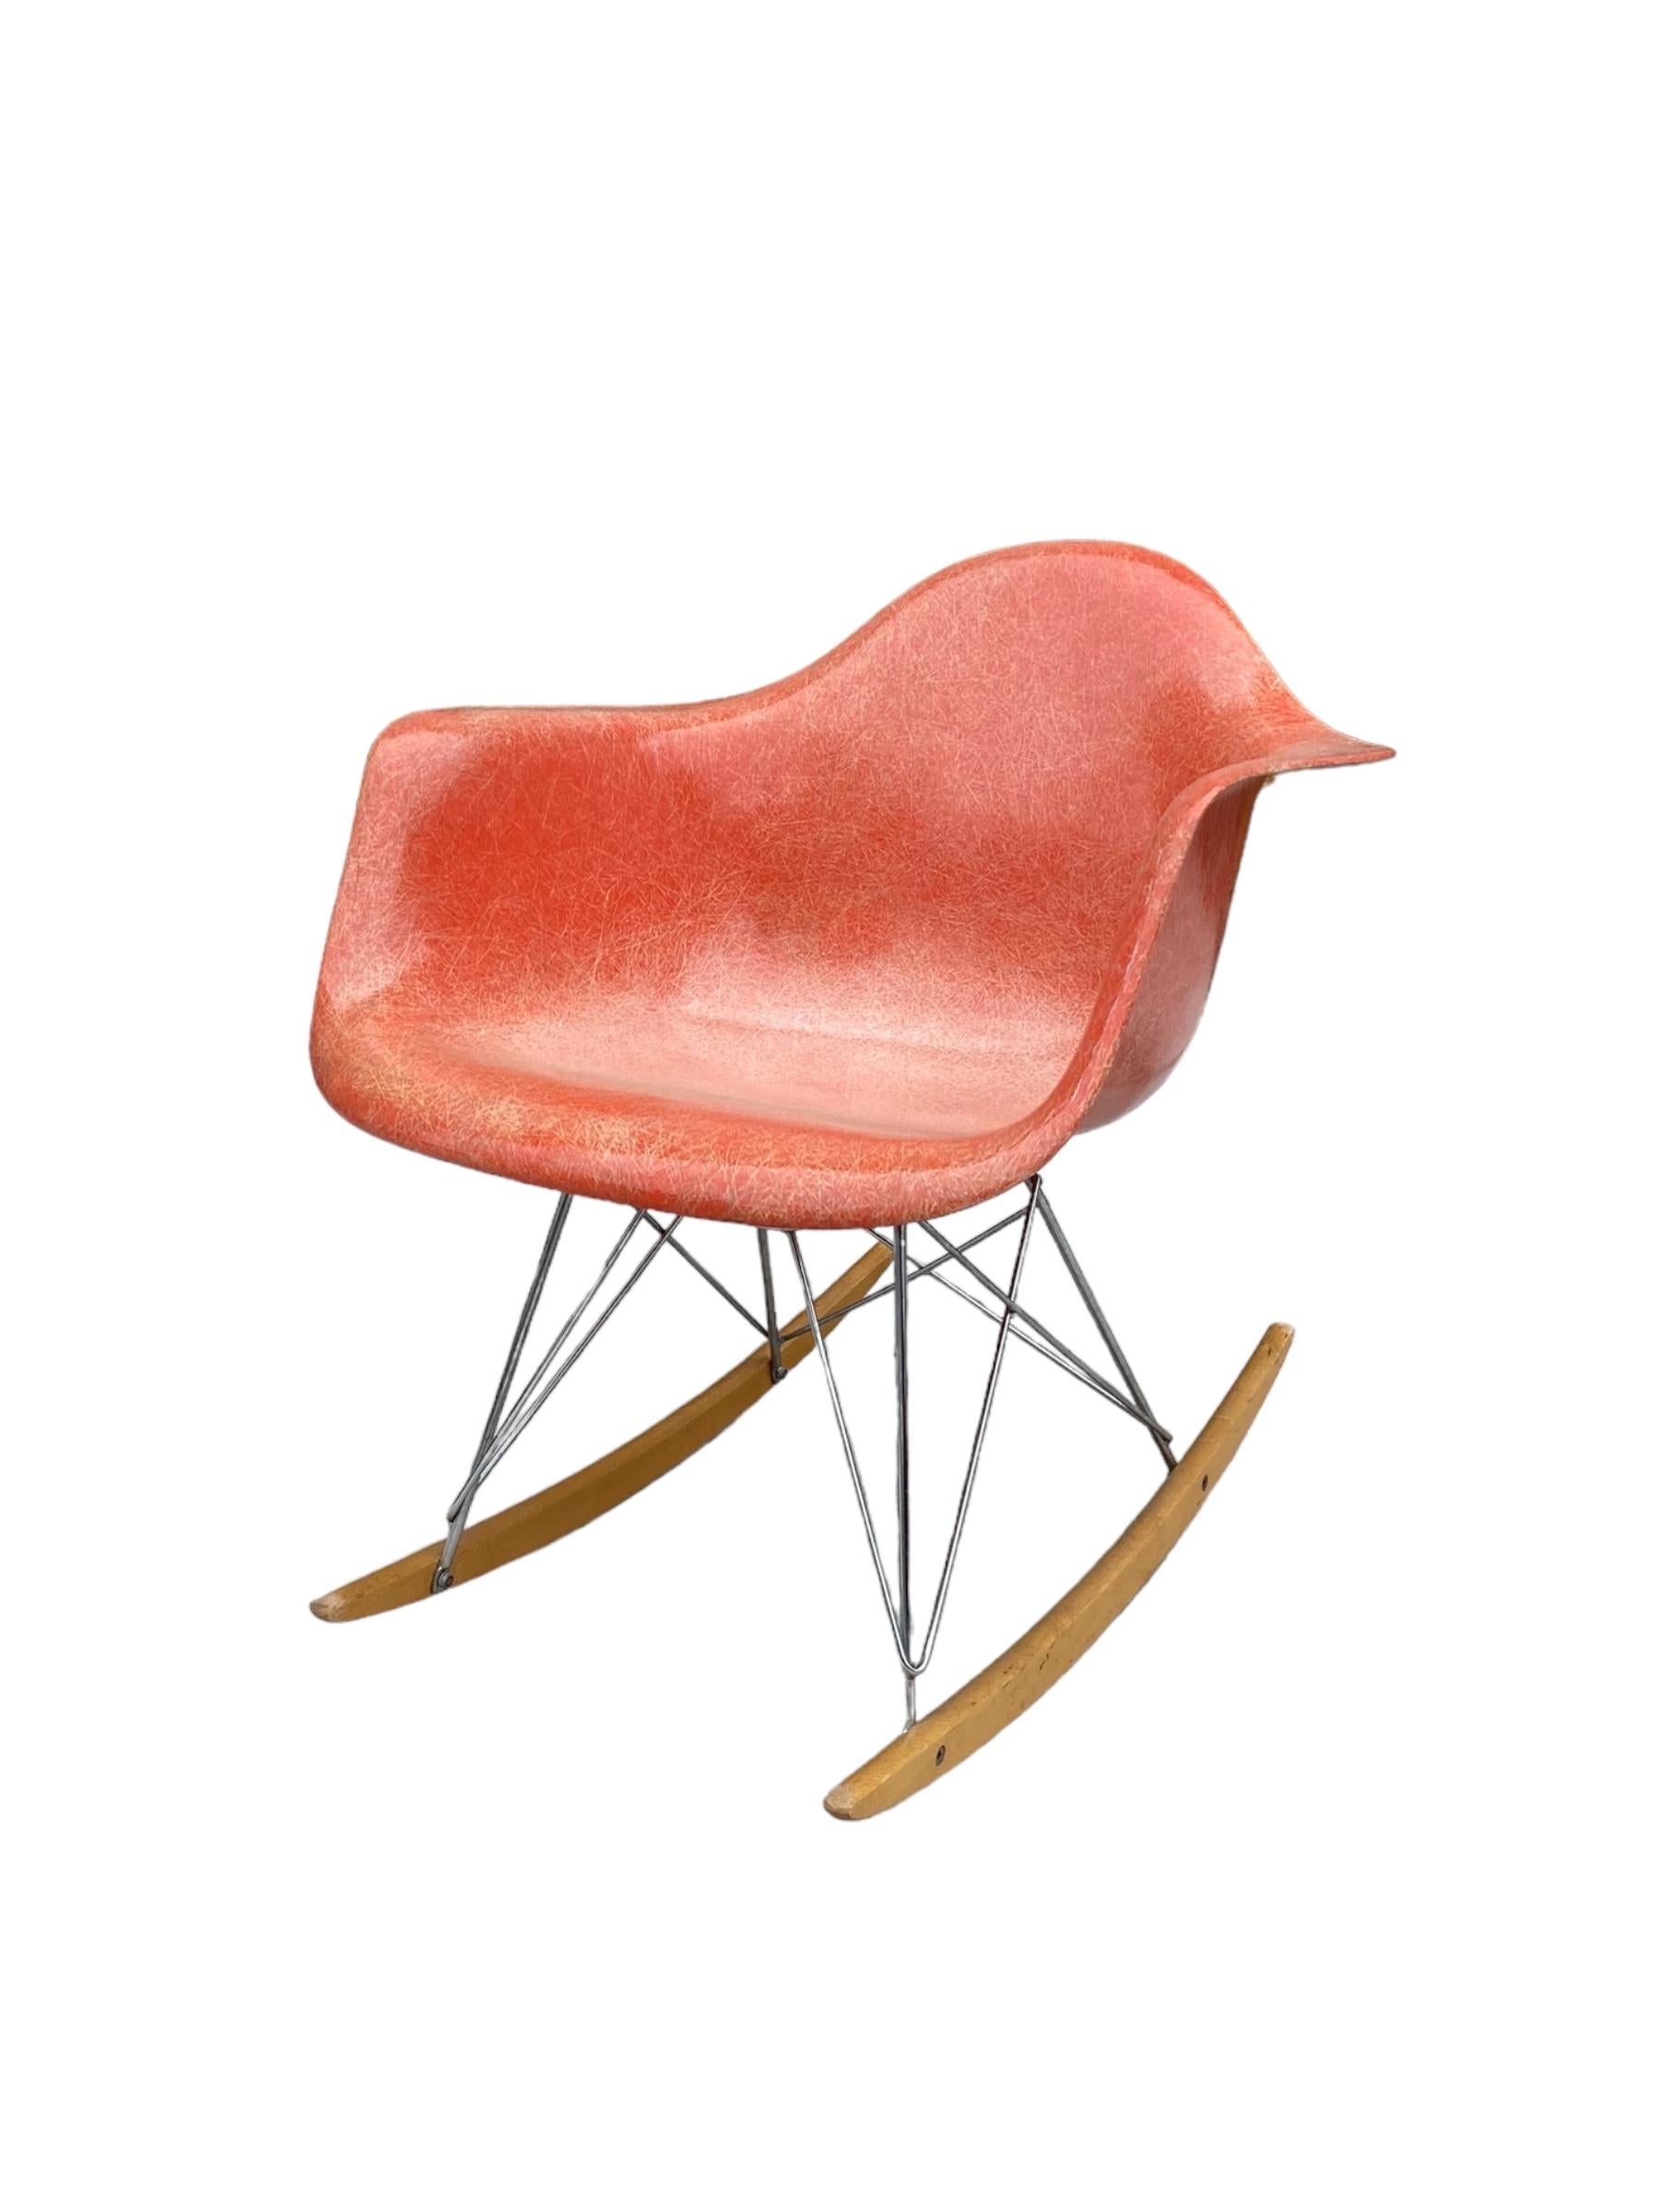 Hübsche Herman Miller Eames Glasfaserschale aus den 1950er Jahren auf späterem Wippfuß. Rot-orangefarbenes Fiberglas mit spektakulärem Faserkontrast. Gestell aus verchromtem Stahl mit Kufen aus Ahornholz. Signiert unter dem Schalensitz mit